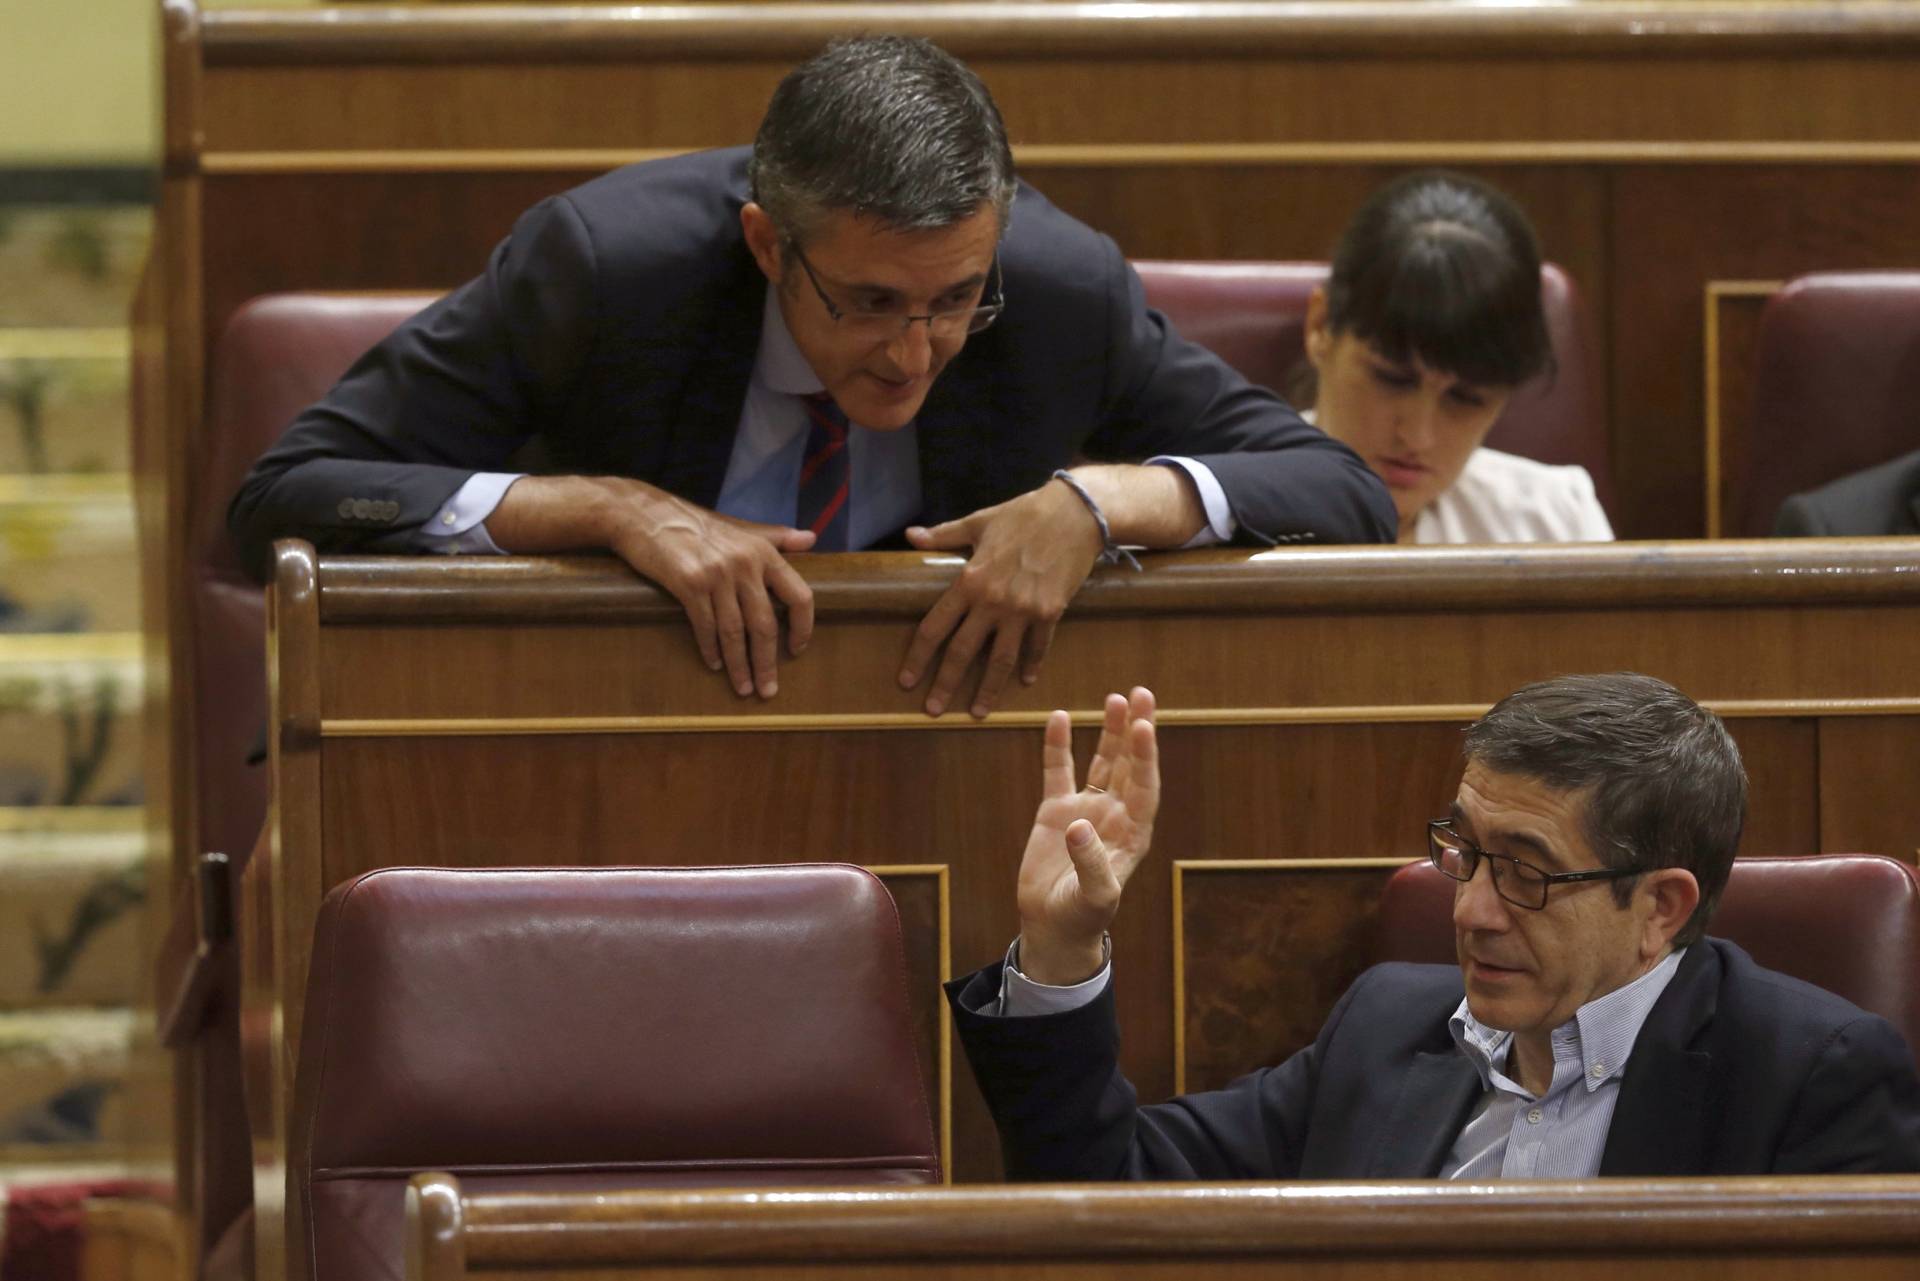 Madina aboga por la abstención para comenzar a "derogar la obra de Rajoy"